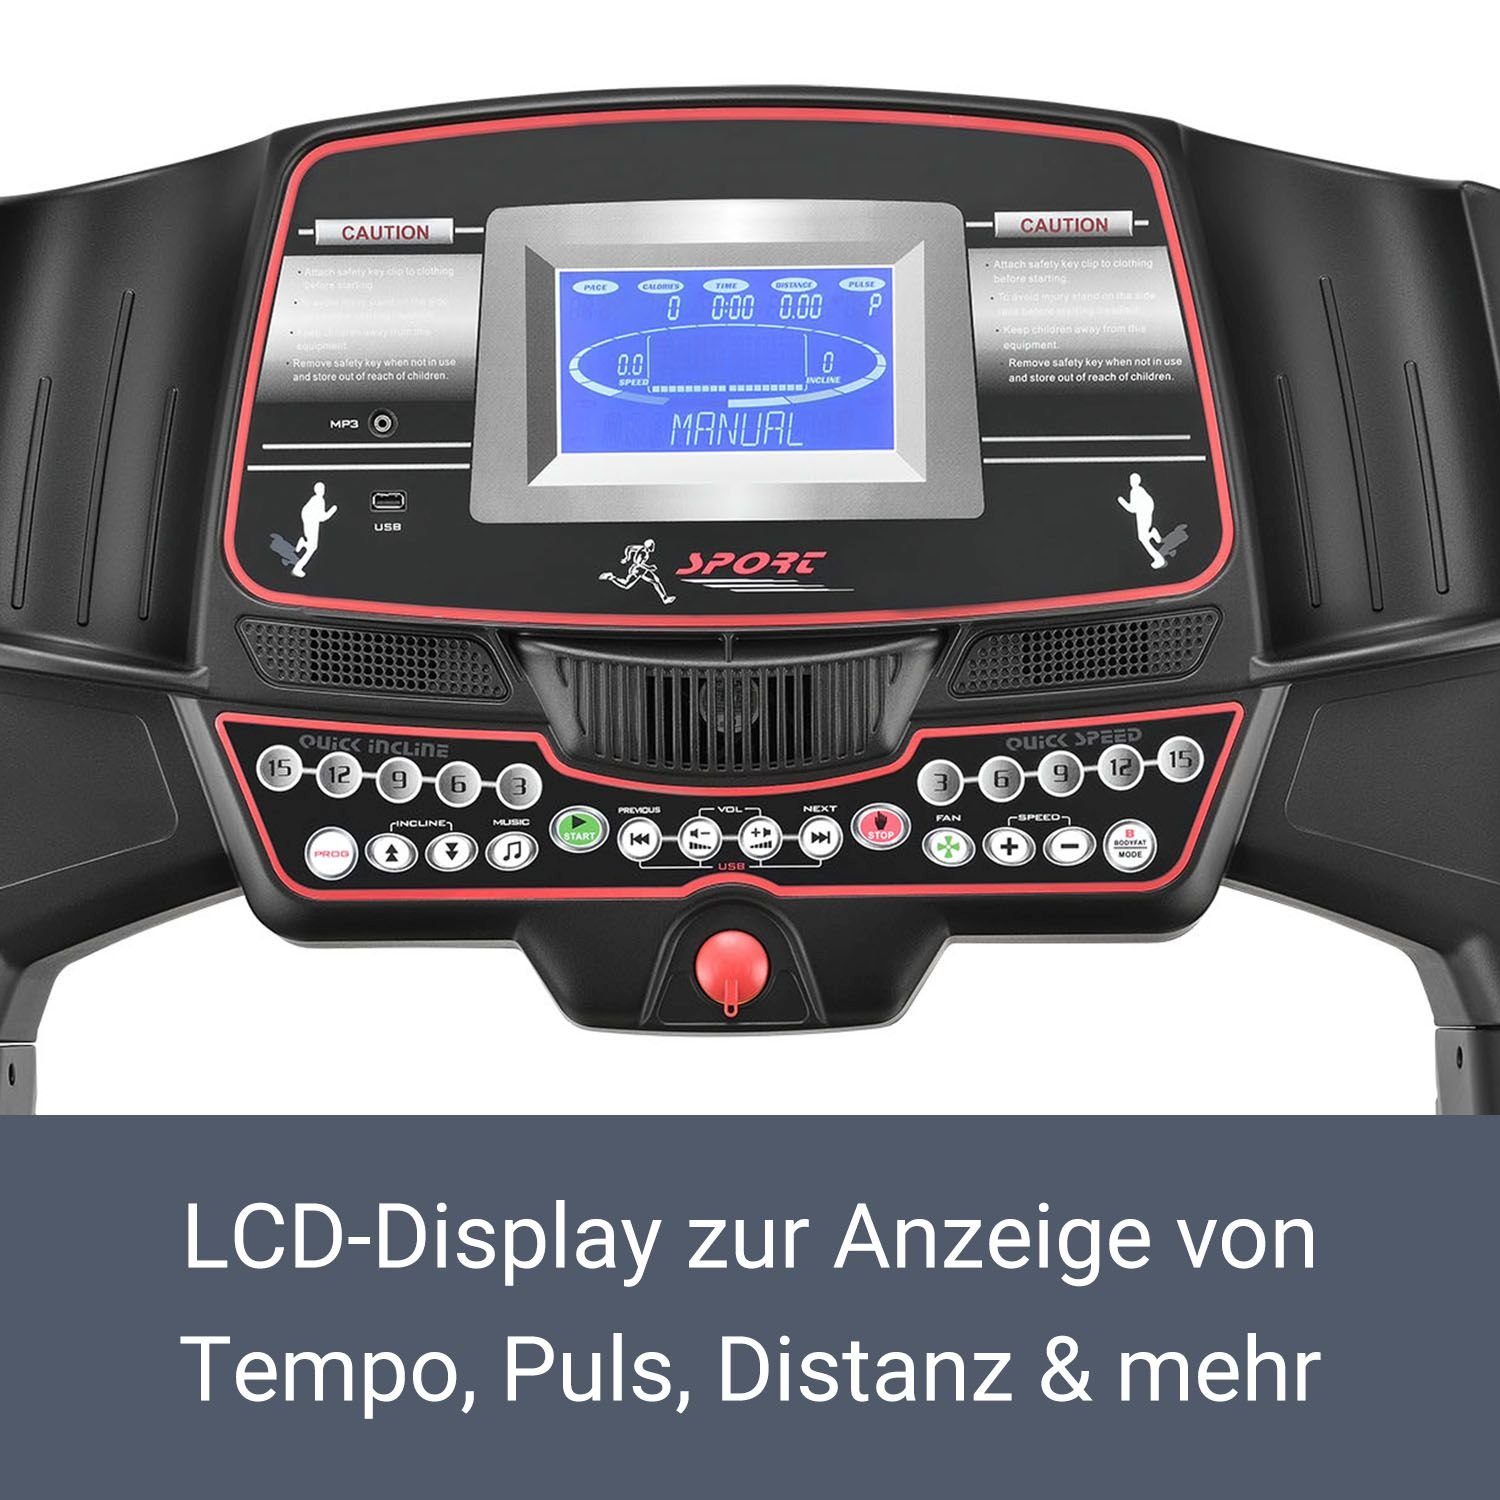 Trainingsprogramme, 6000, 99 Speedrunner LCD Bildschirm, Pulssensoren mit moderner ArtSport Laufband